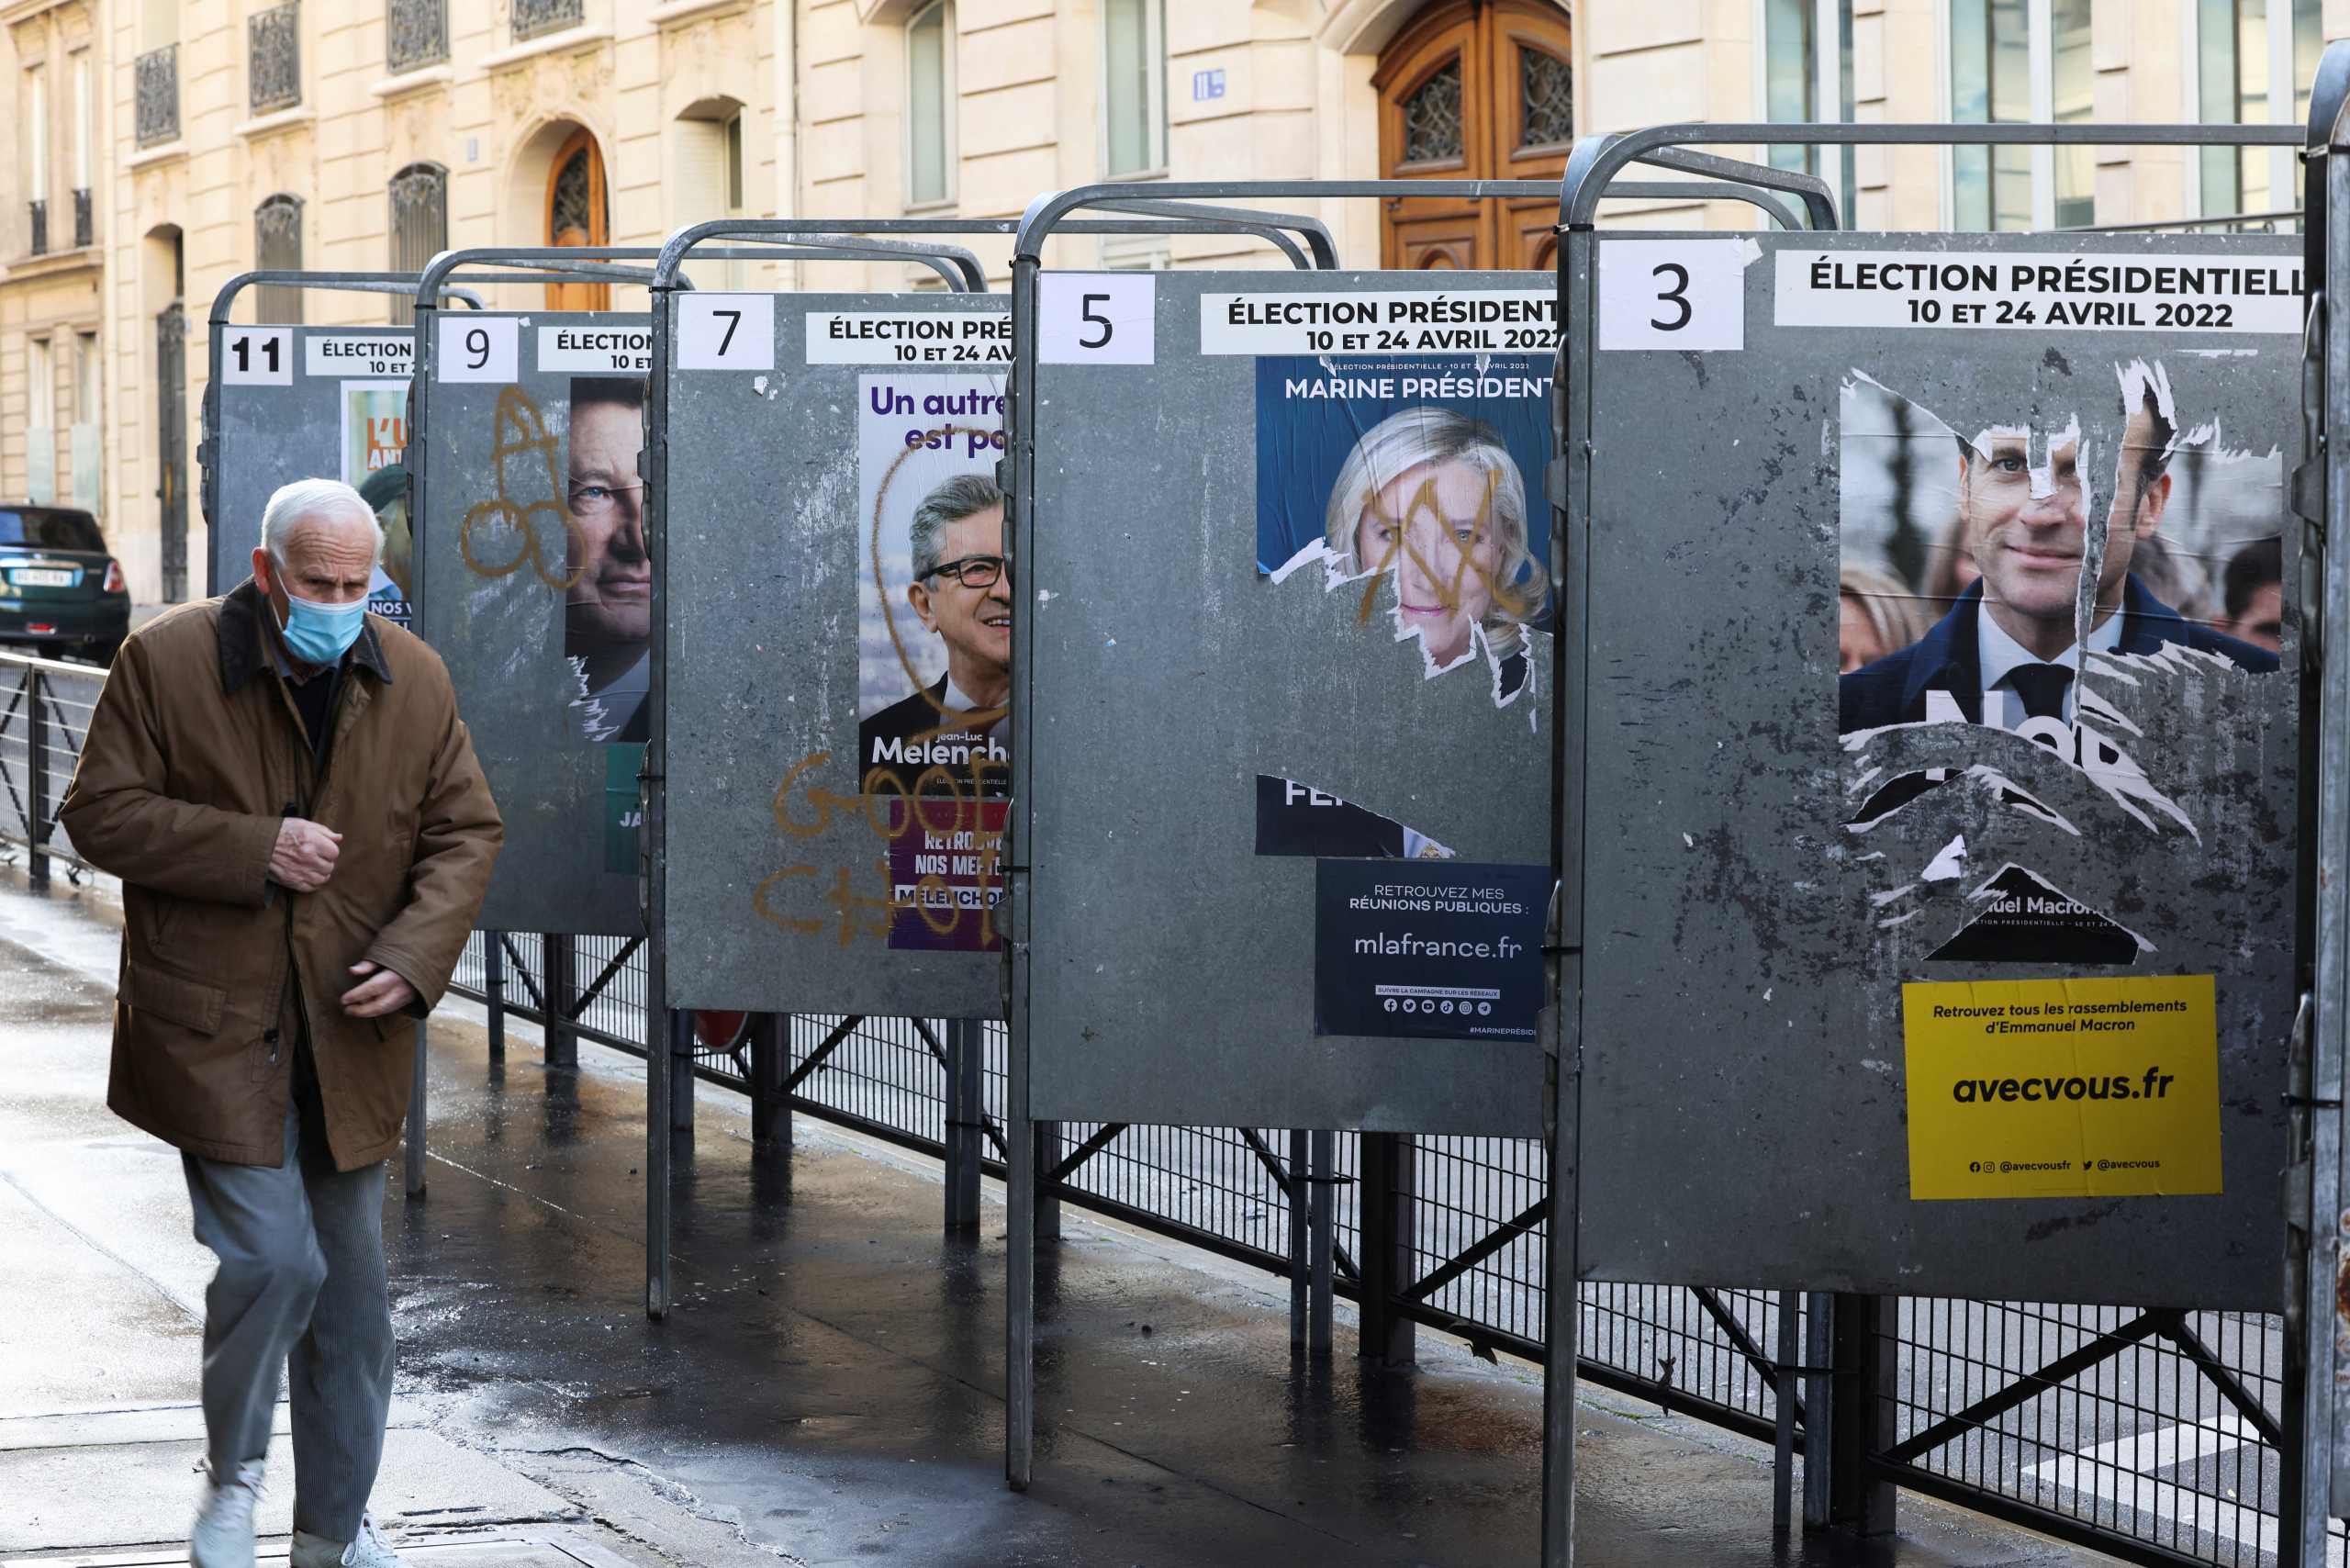 Προεδρικές εκλογές στη Γαλλία: Στις 21.00 οι πρώτες επίσημες εκτιμήσεις για το αποτέλεσμα